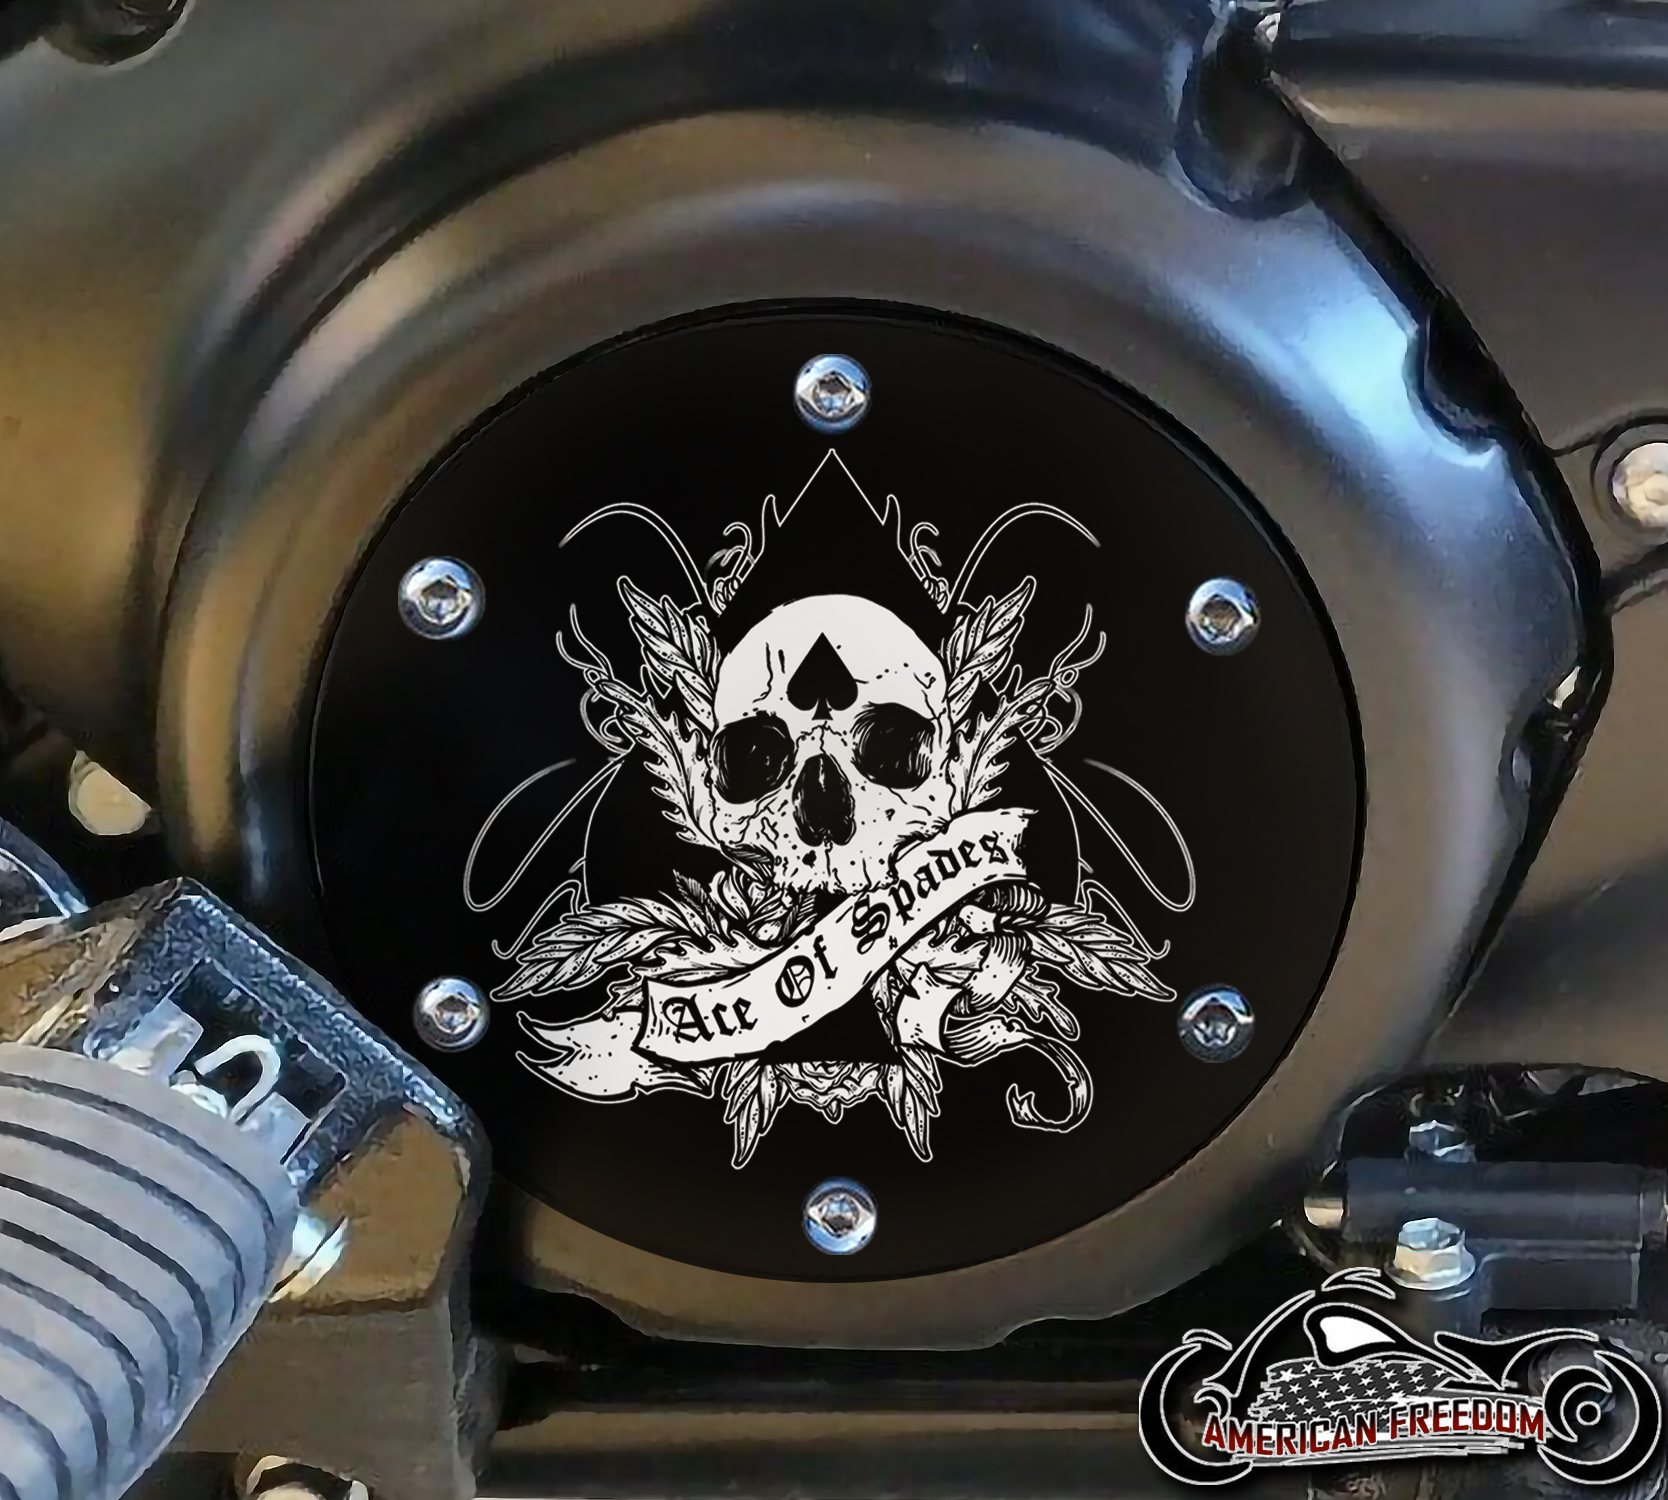 SUZUKI M109R Derby/Engine Cover - Skull Ace Of Spades